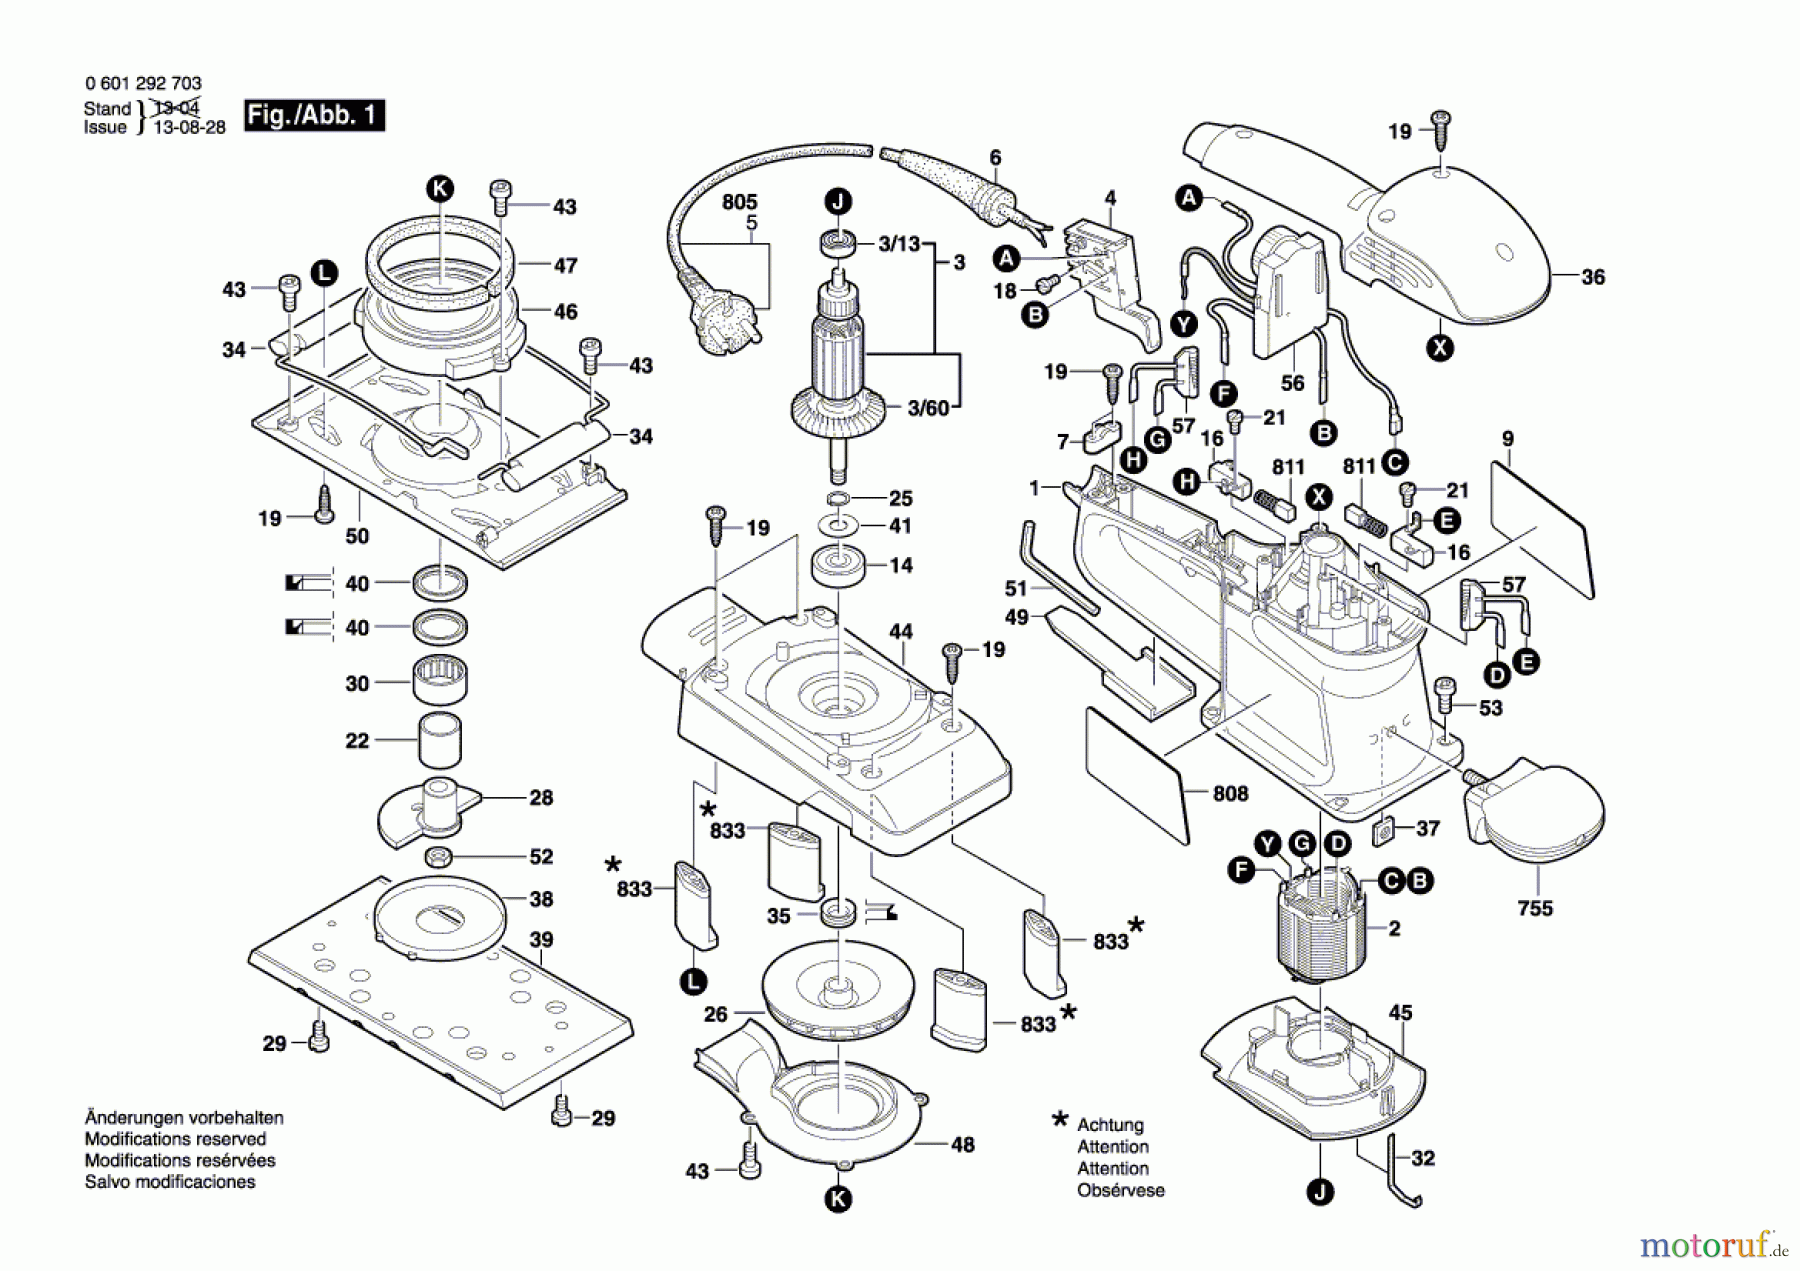  Bosch Werkzeug Schwingschleifer GSS 230 AE Seite 1